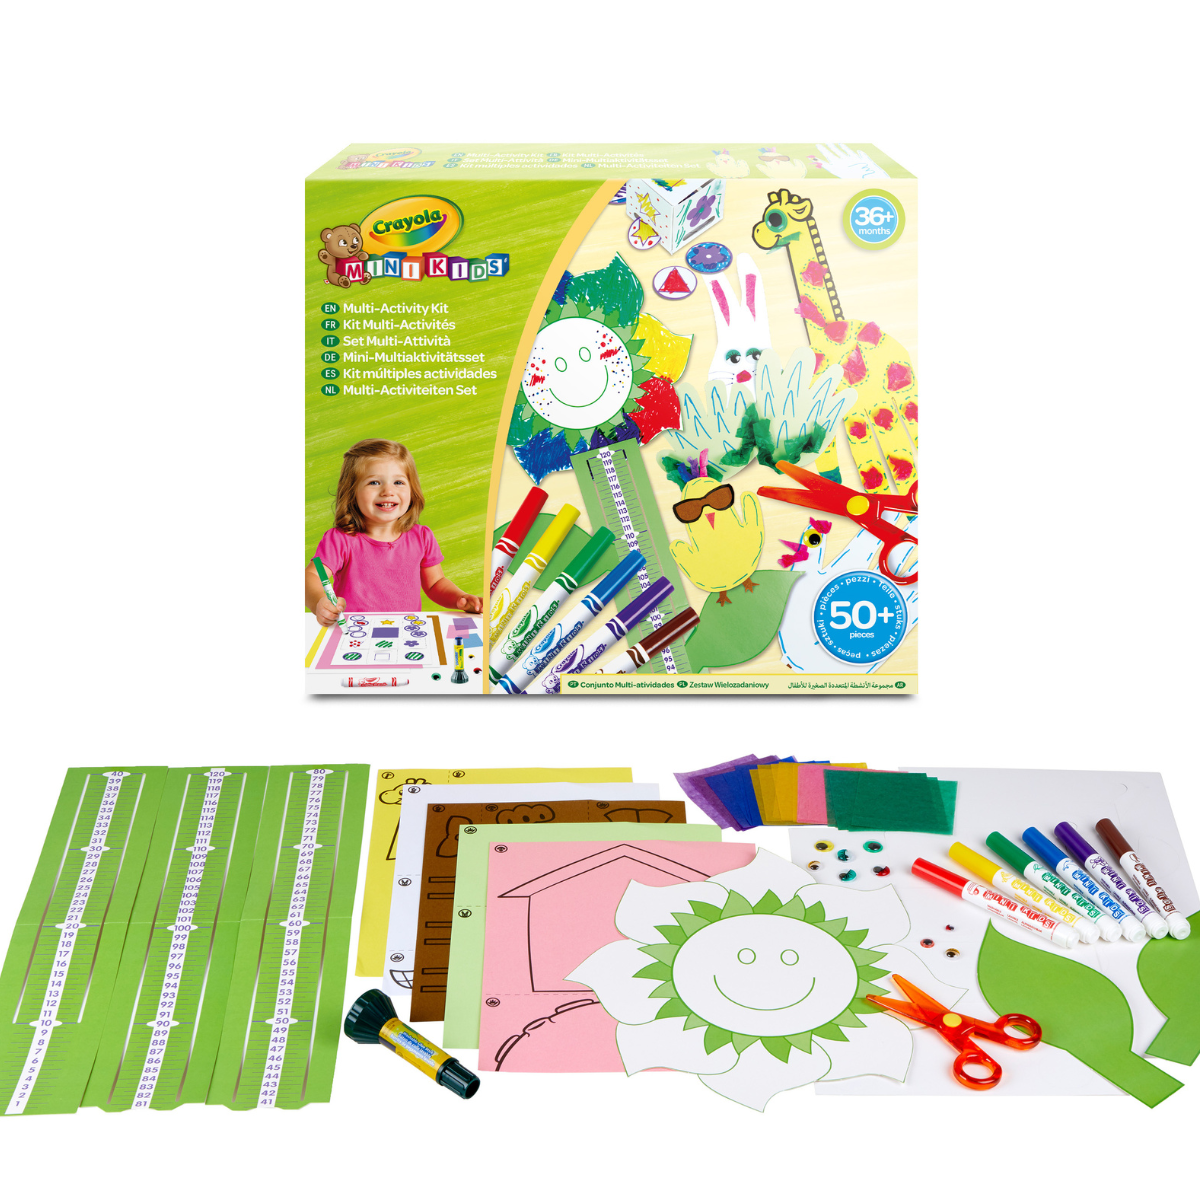 Crayola mini kids - set multi-attività per realizzare lavoretti creativi, con pennarelli, forbicine, colla, oltre 50 pezzi attività creativa per bambini e bambine da 3 anni - CRAYOLA